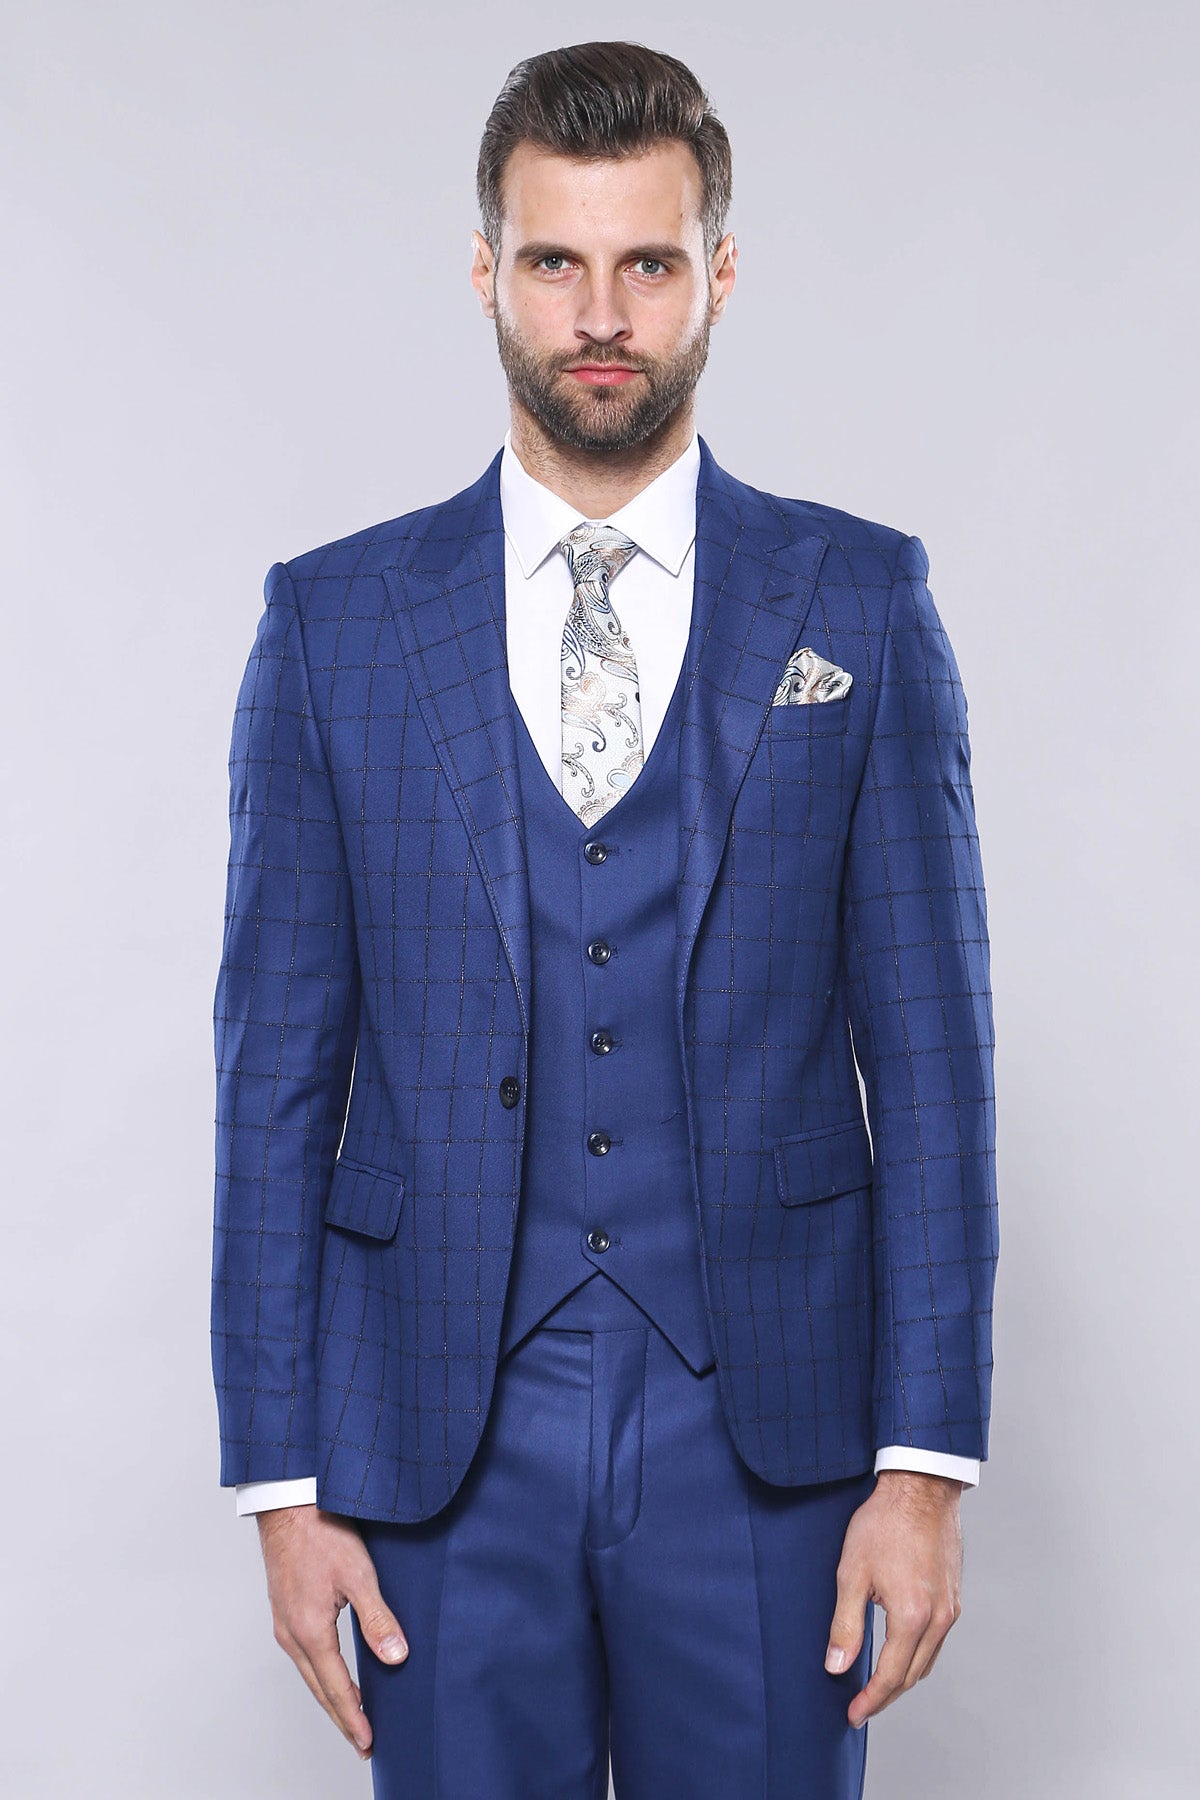 Blue Vested Suit With Plaid Blazer 5